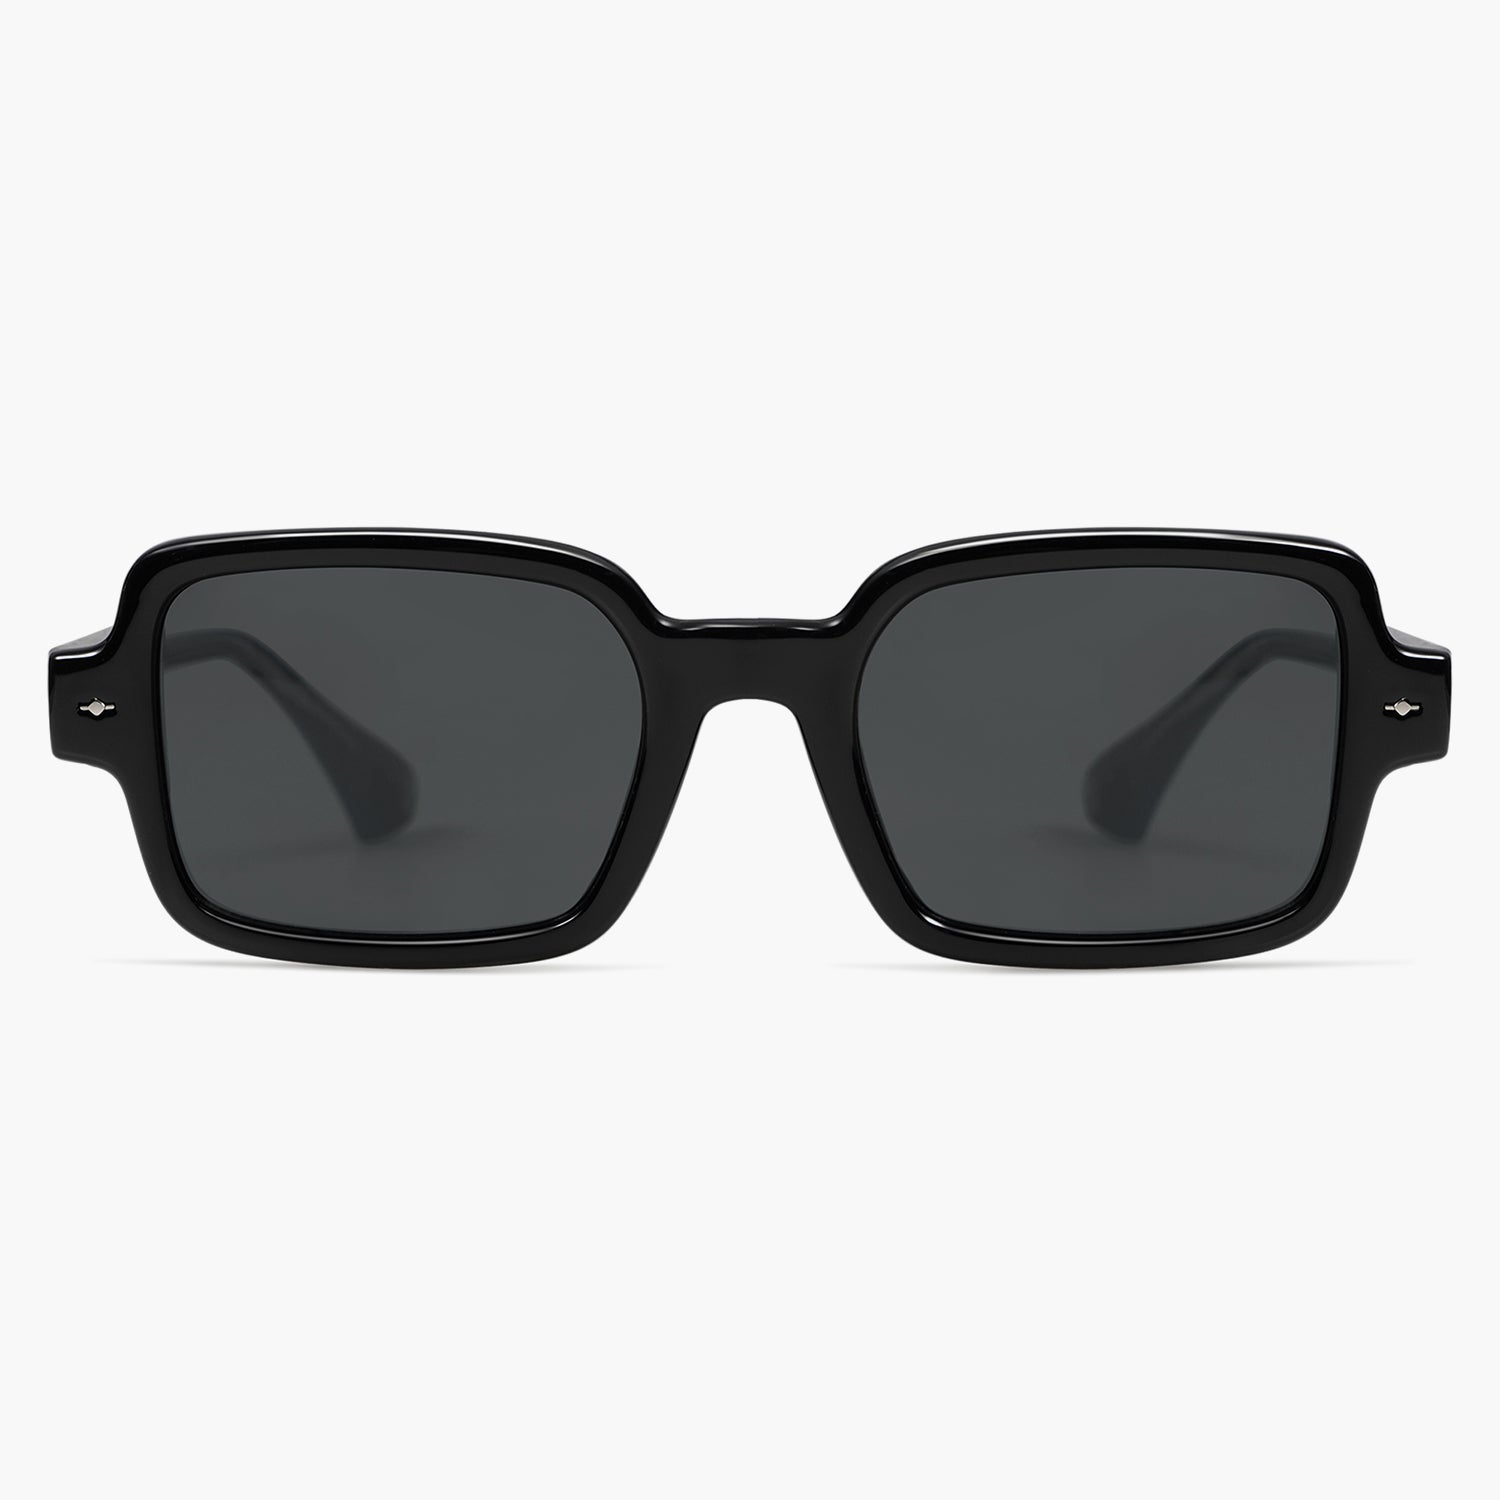 Buy Mirrored Aviator Sunglasses for Women | Journey | SOJOS